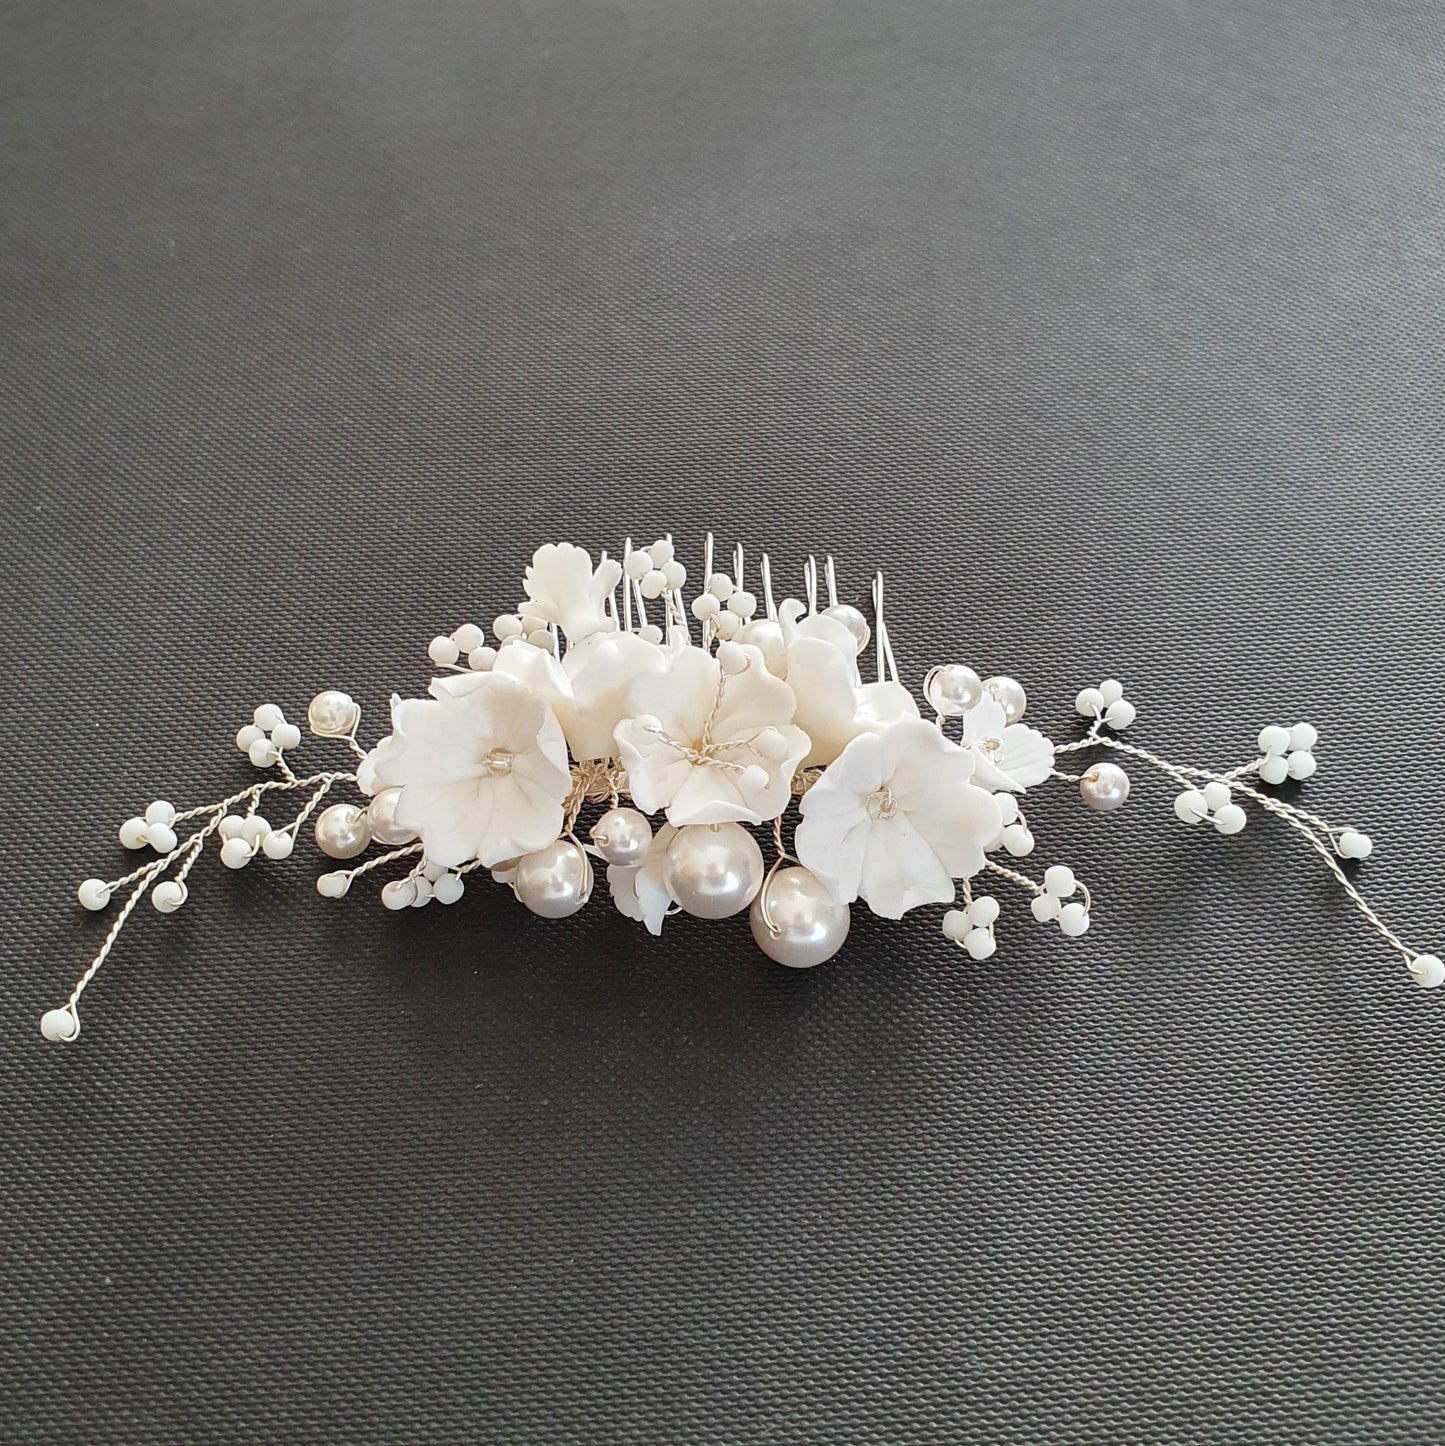 Peineta de novia con perlas y flores blancas-Daphne